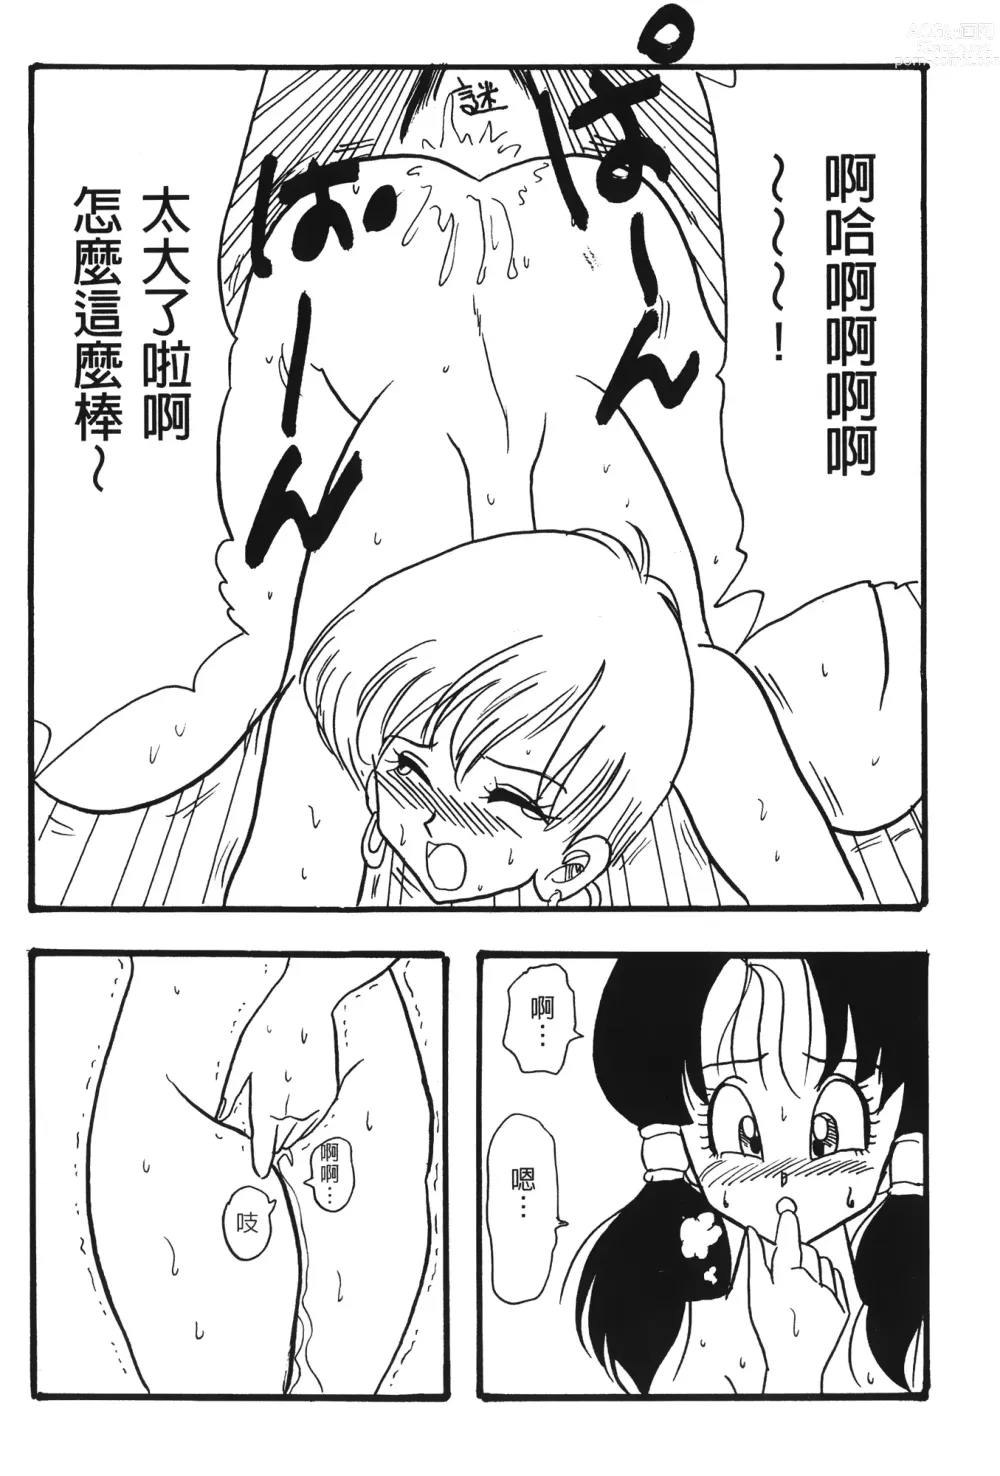 Page 23 of doujinshi ドラゴンパール 02